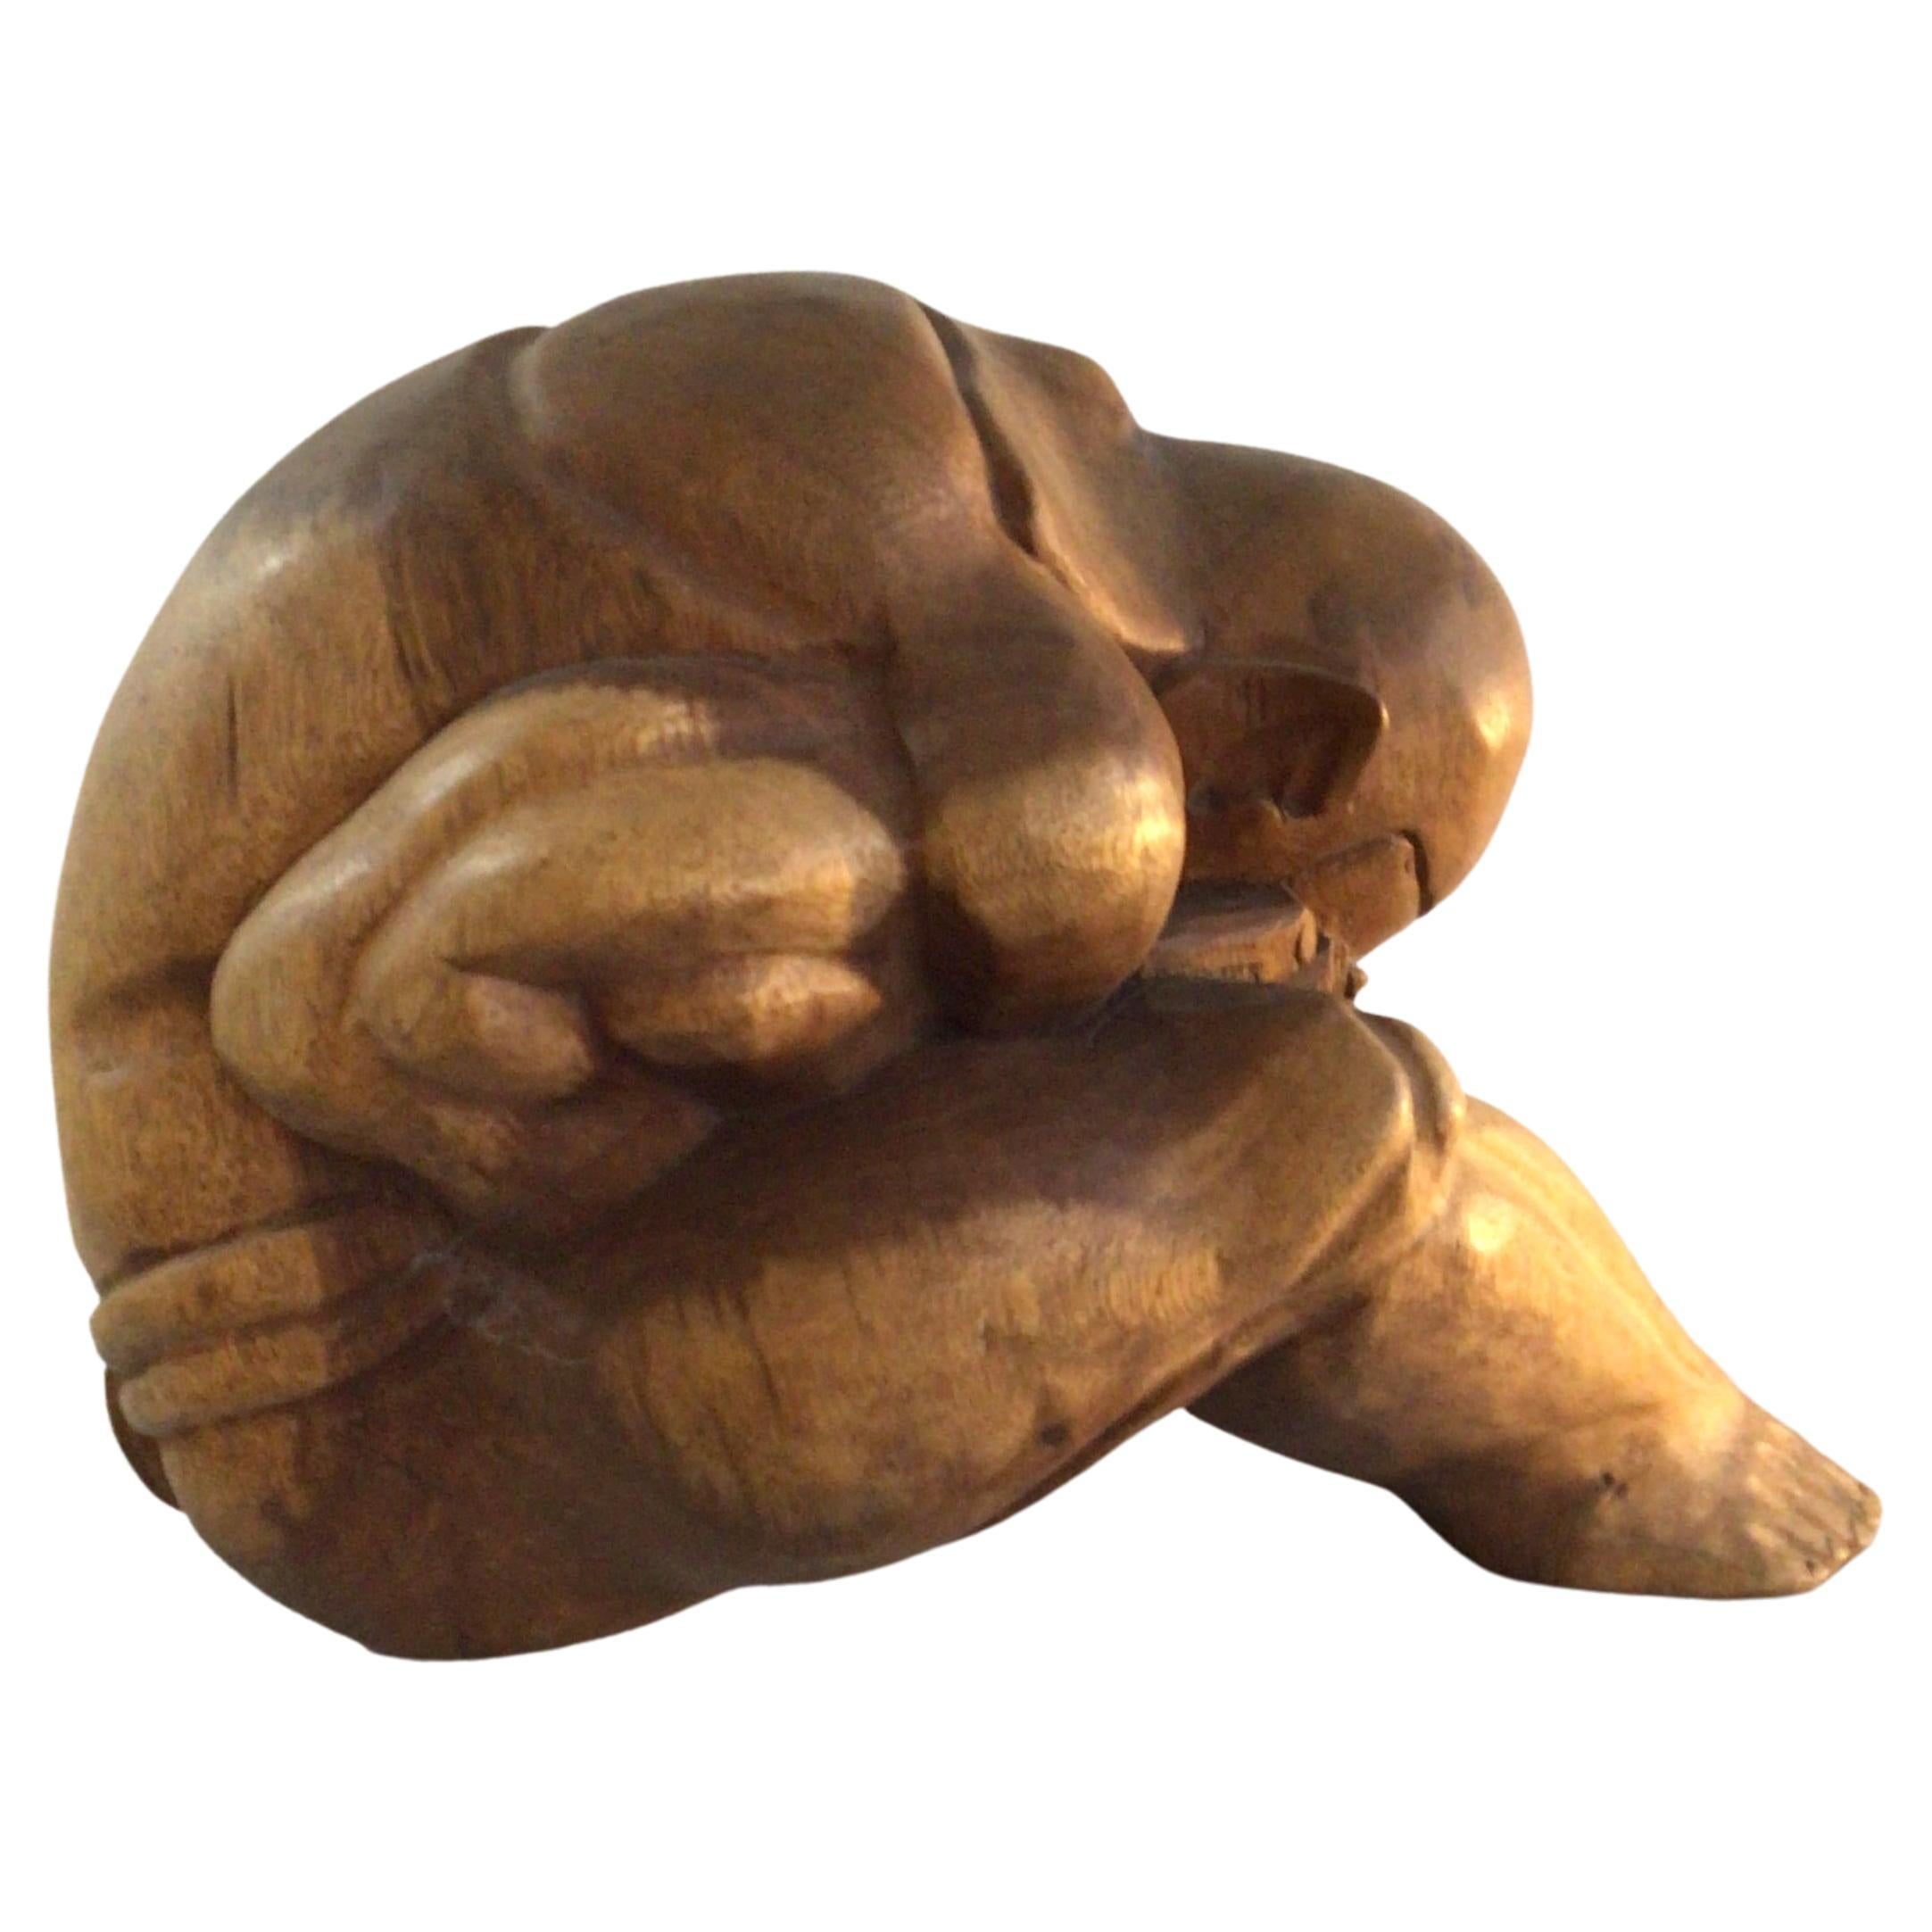 1960s Sculpture en bois sculptée à la main d'un homme en train de prier / pleurer